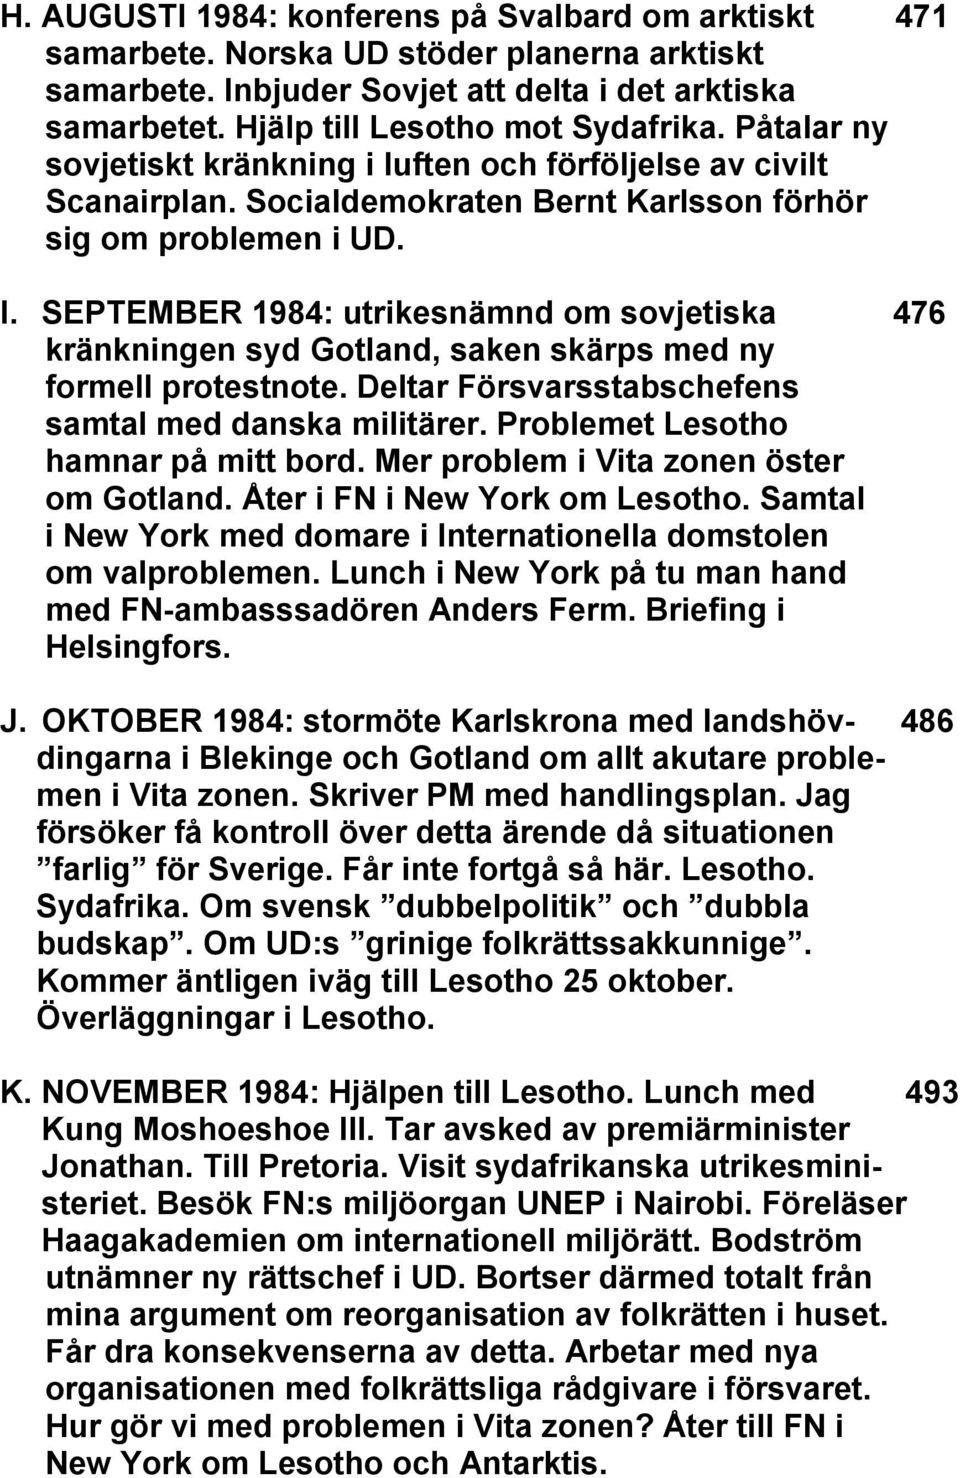 SEPTEMBER 1984: utrikesnämnd om sovjetiska 476 kränkningen syd Gotland, saken skärps med ny formell protestnote. Deltar Försvarsstabschefens samtal med danska militärer.